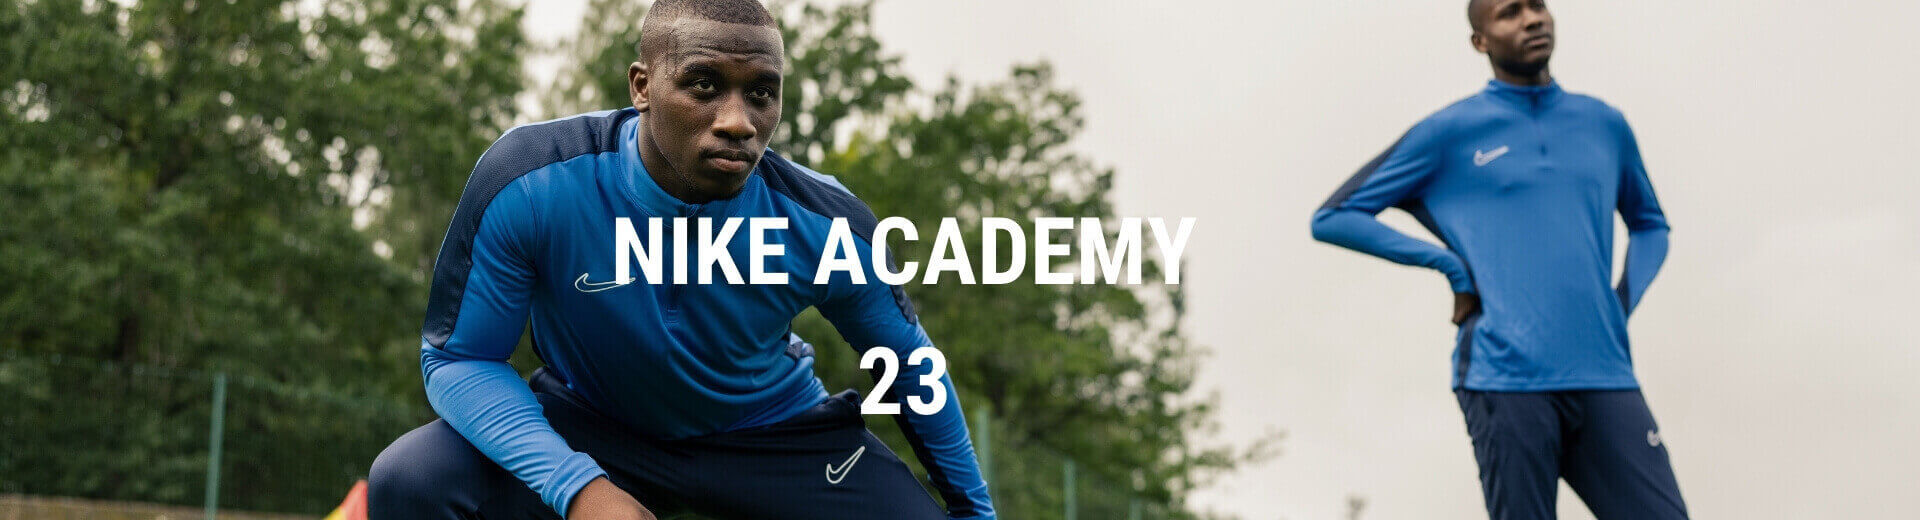 Nike Academy 23